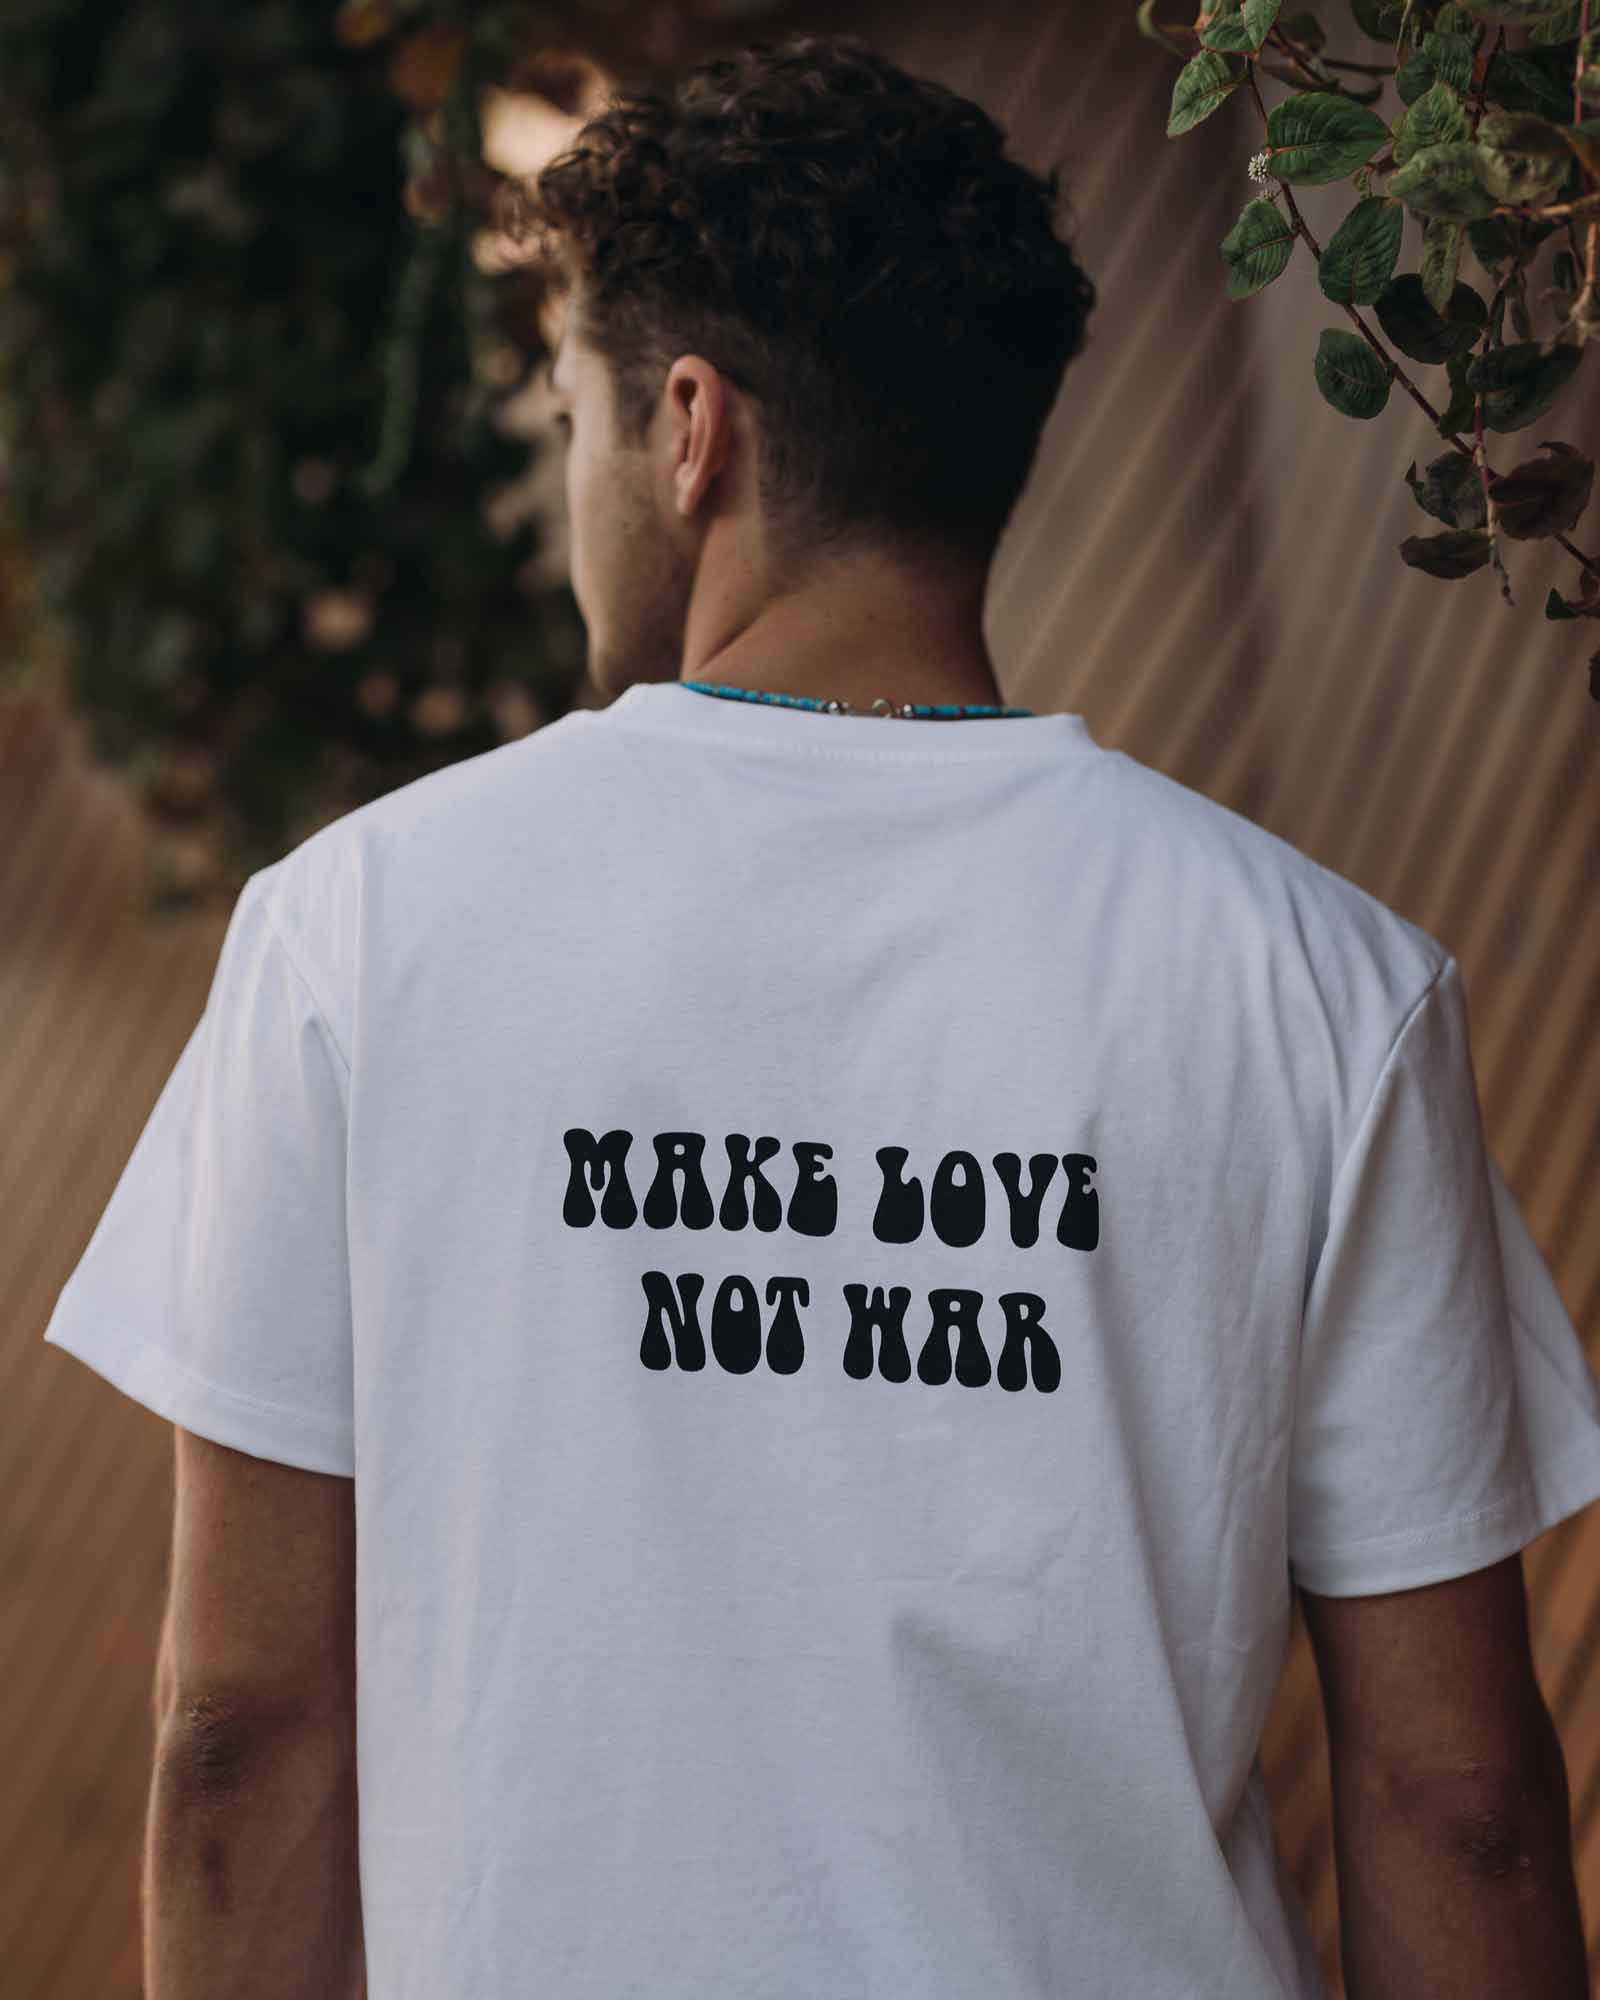 Camiseta blanca 'Make Love Not War' en el cuerpo del modelo - Camisetas de algodón - Ropa unisex online - Dicci